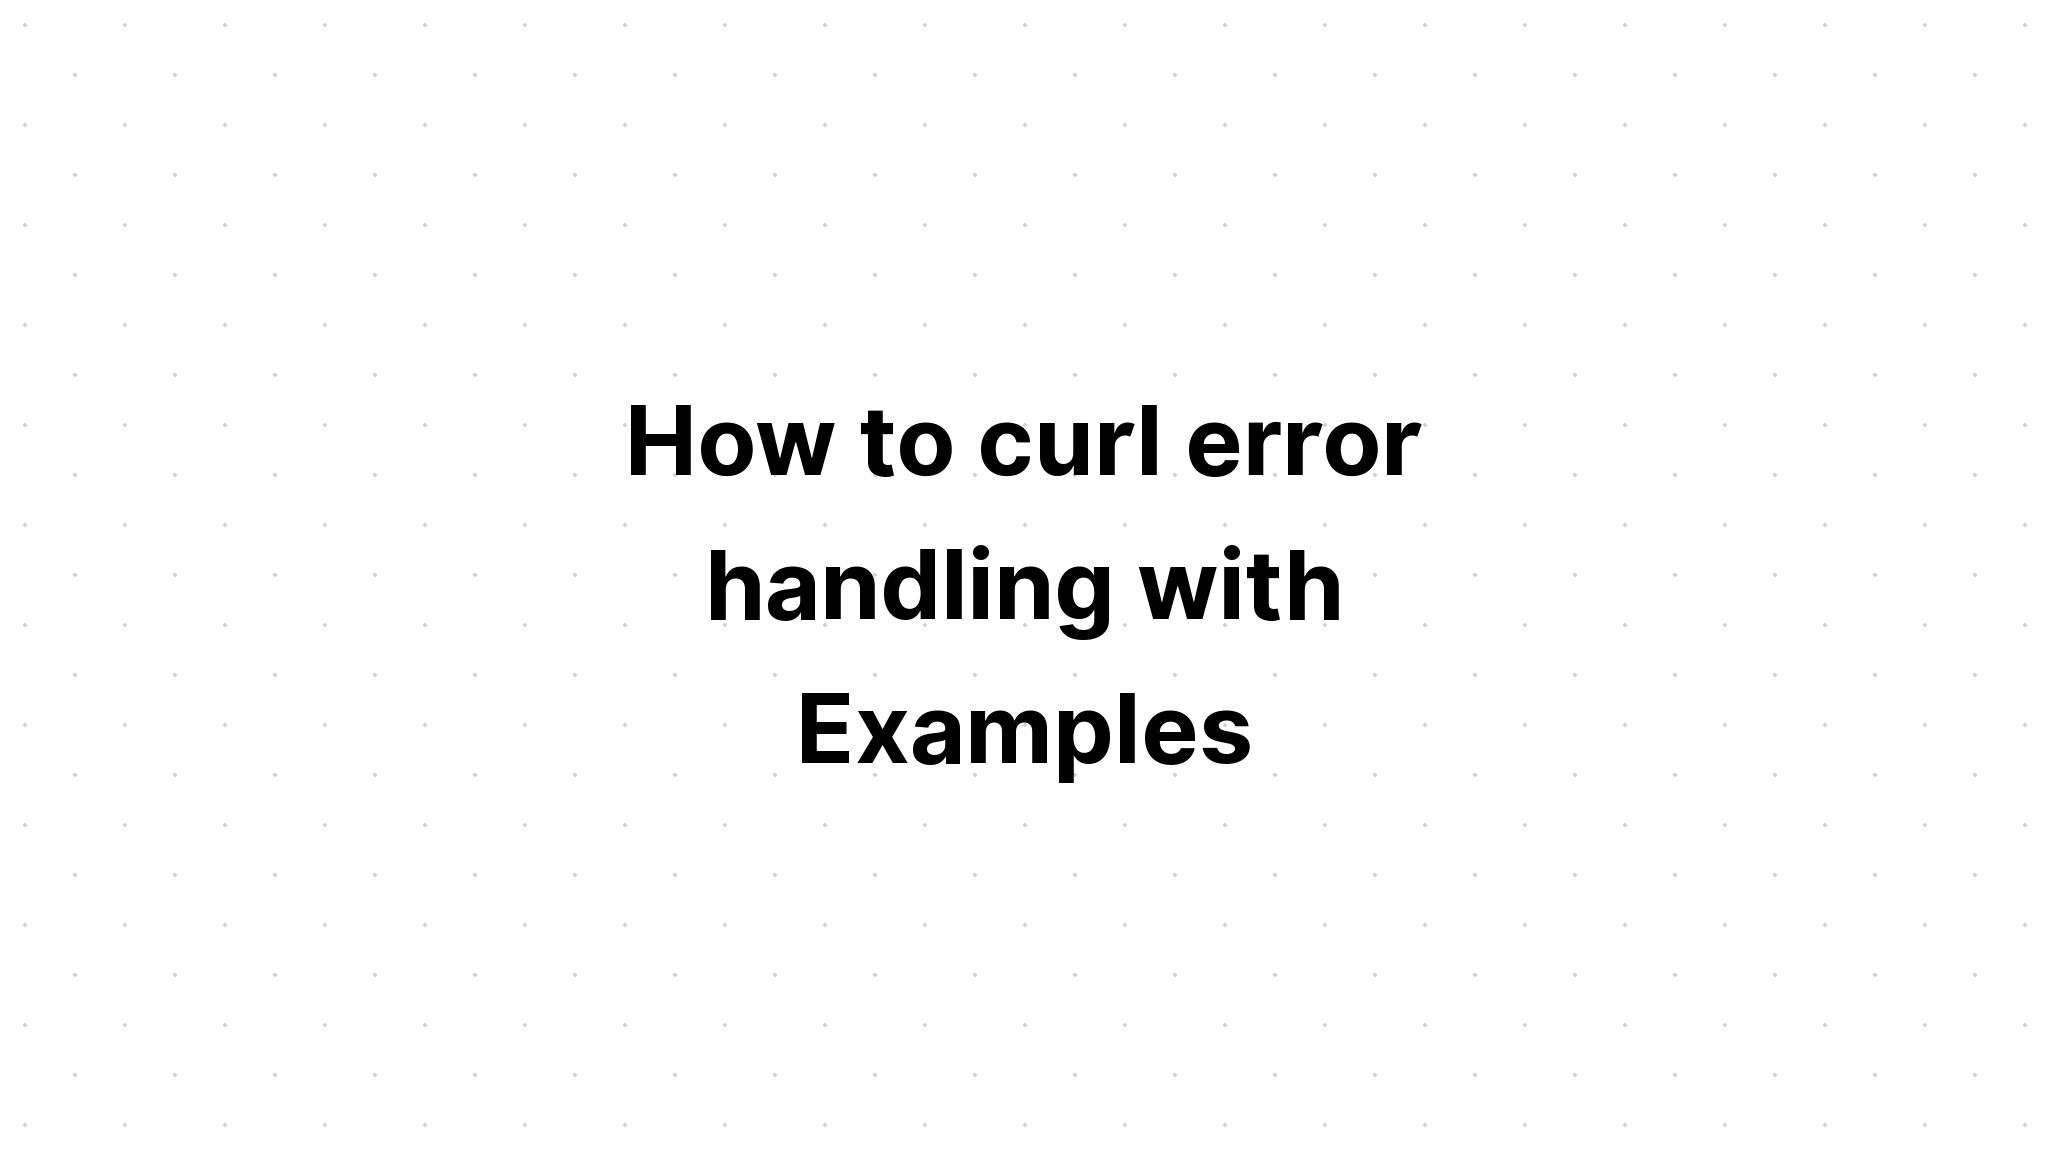 Cách cuộn tròn xử lý lỗi với các ví dụ